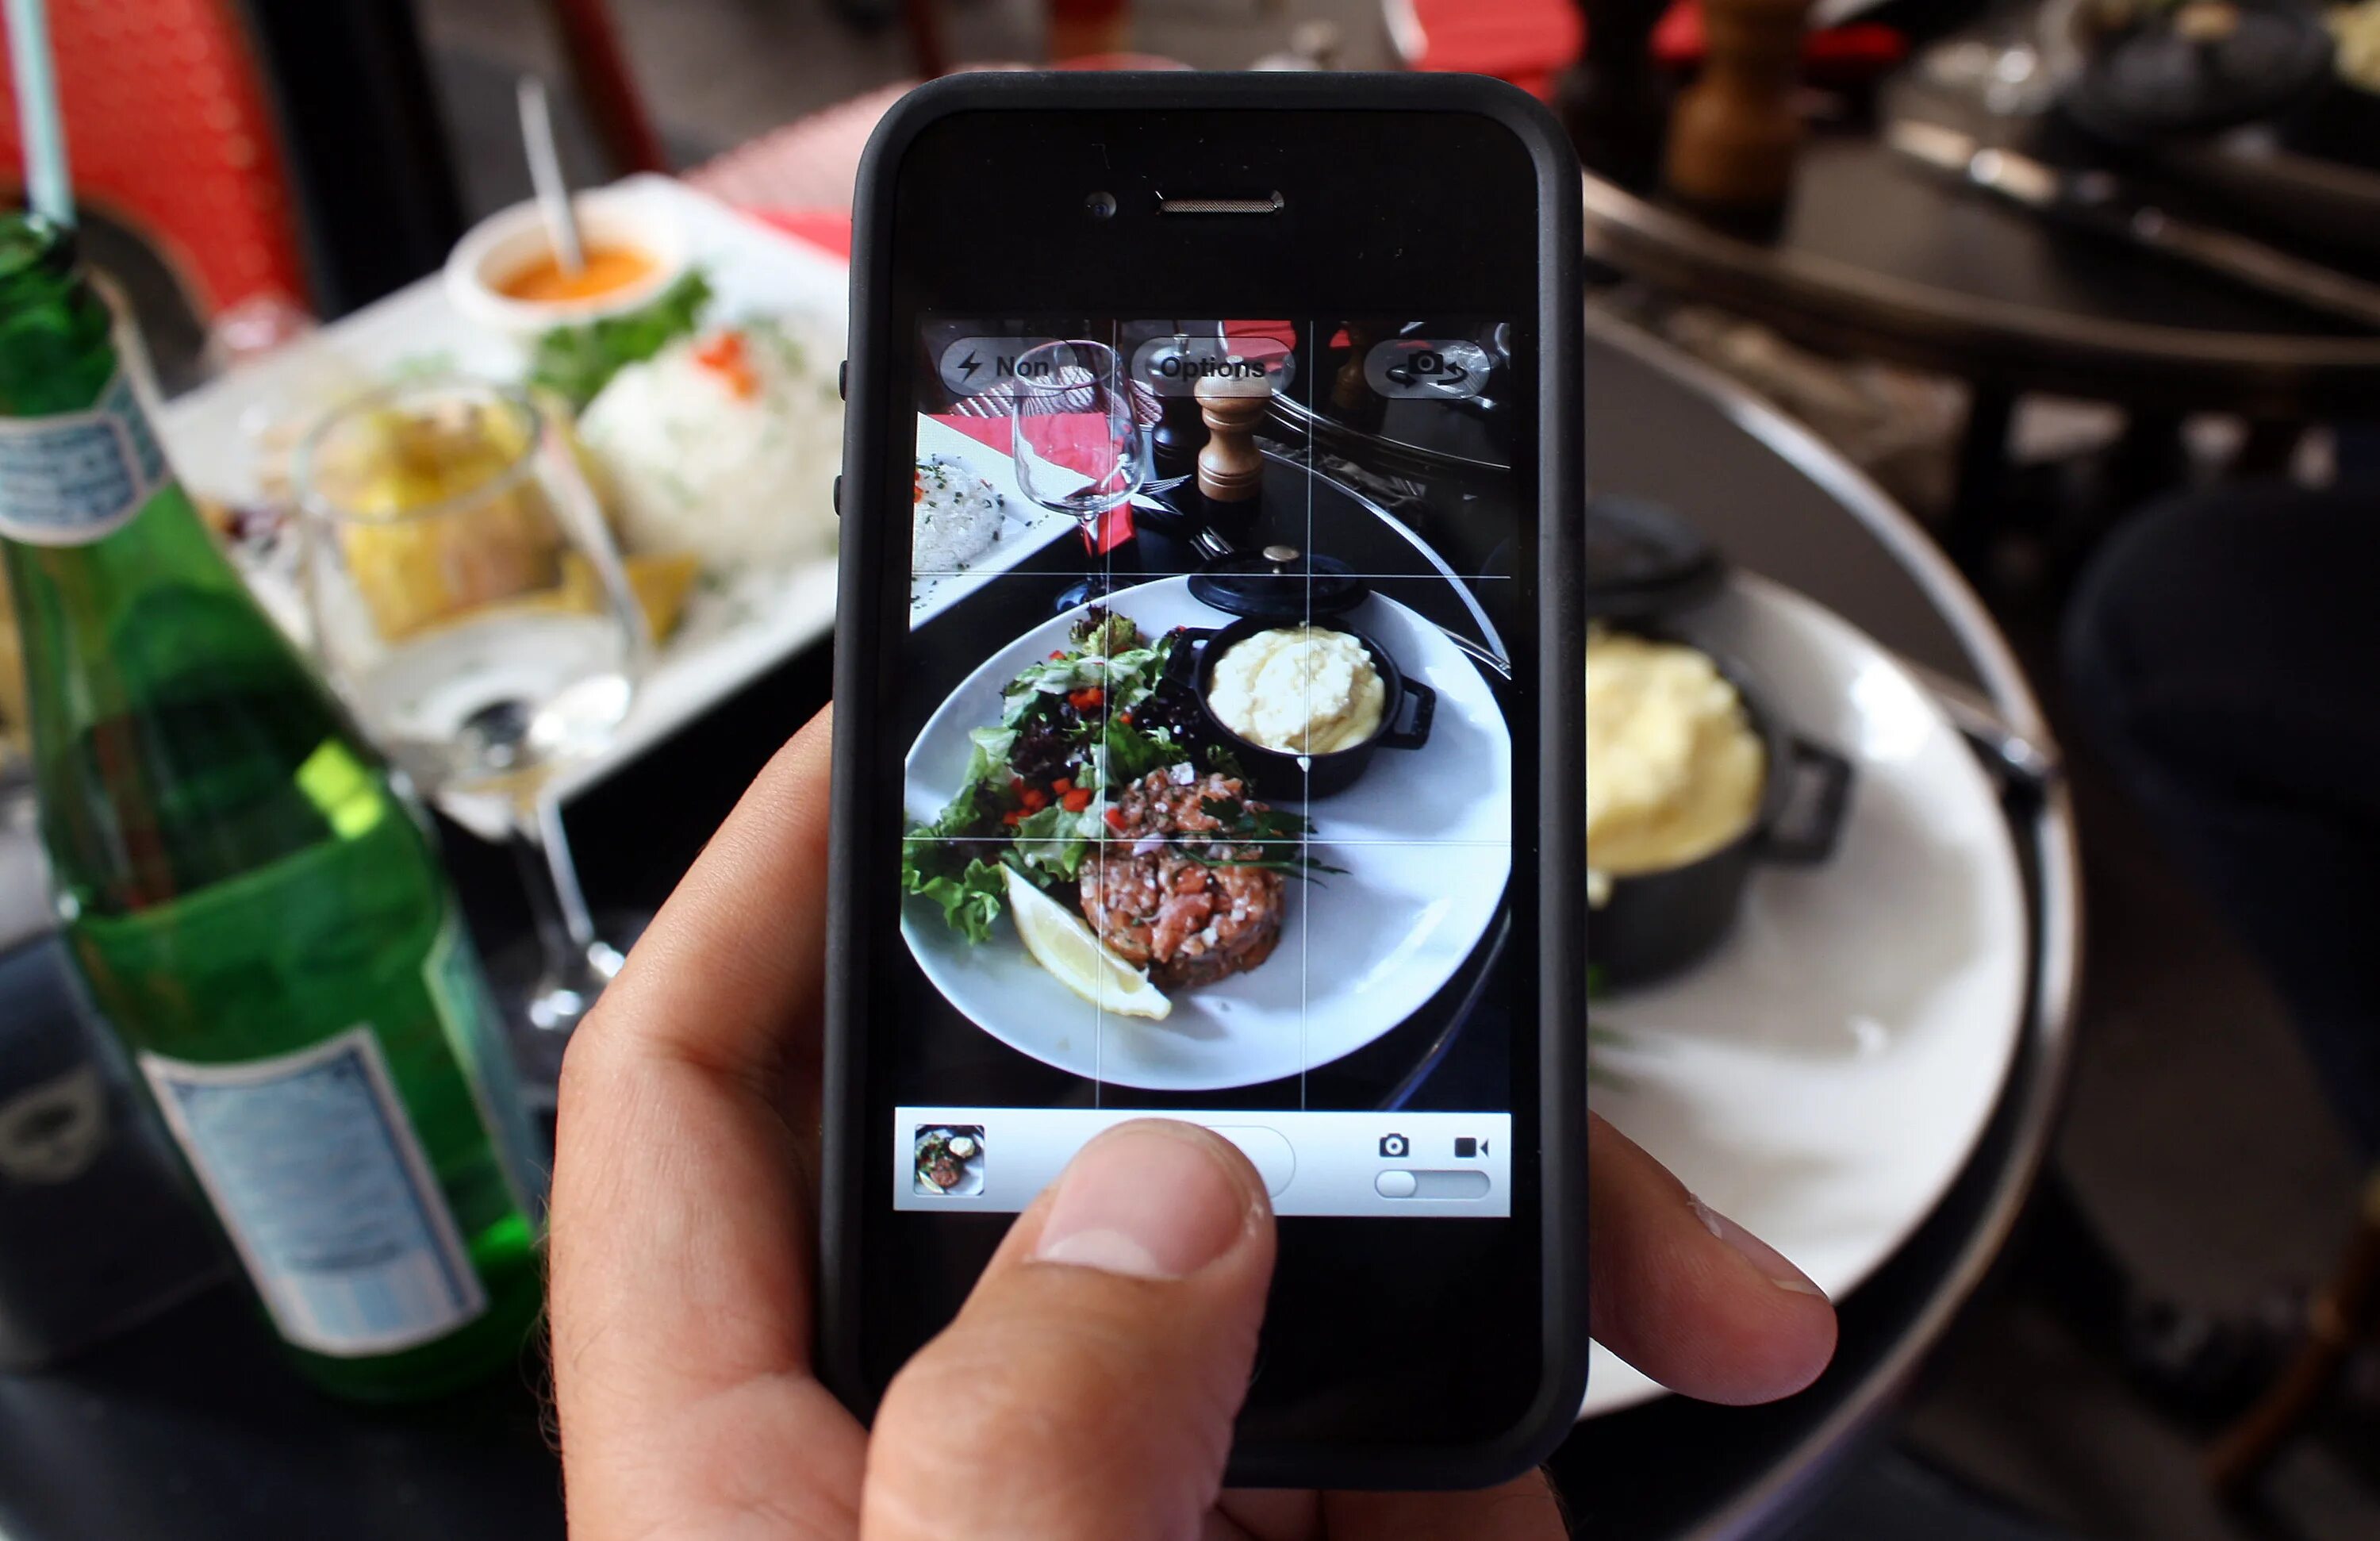 Инстаграмм ресторанов. Фотографирует еду. Ресторан Фотографирование еды. Фотографирует еду на телефон. Люди фотографируют еду в ресторане.